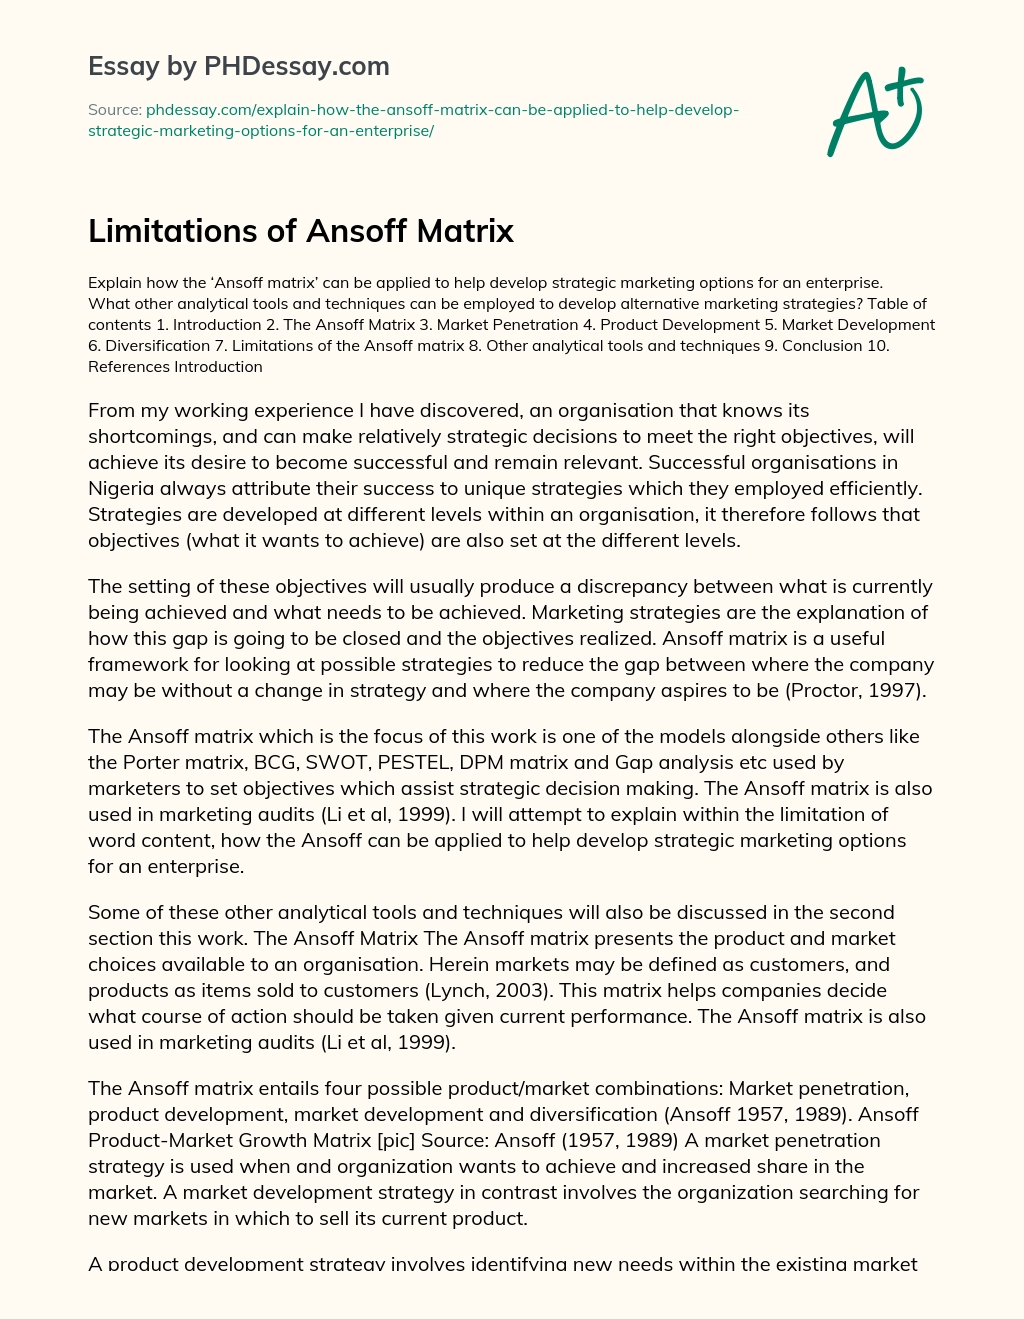 Limitations of Ansoff Matrix essay